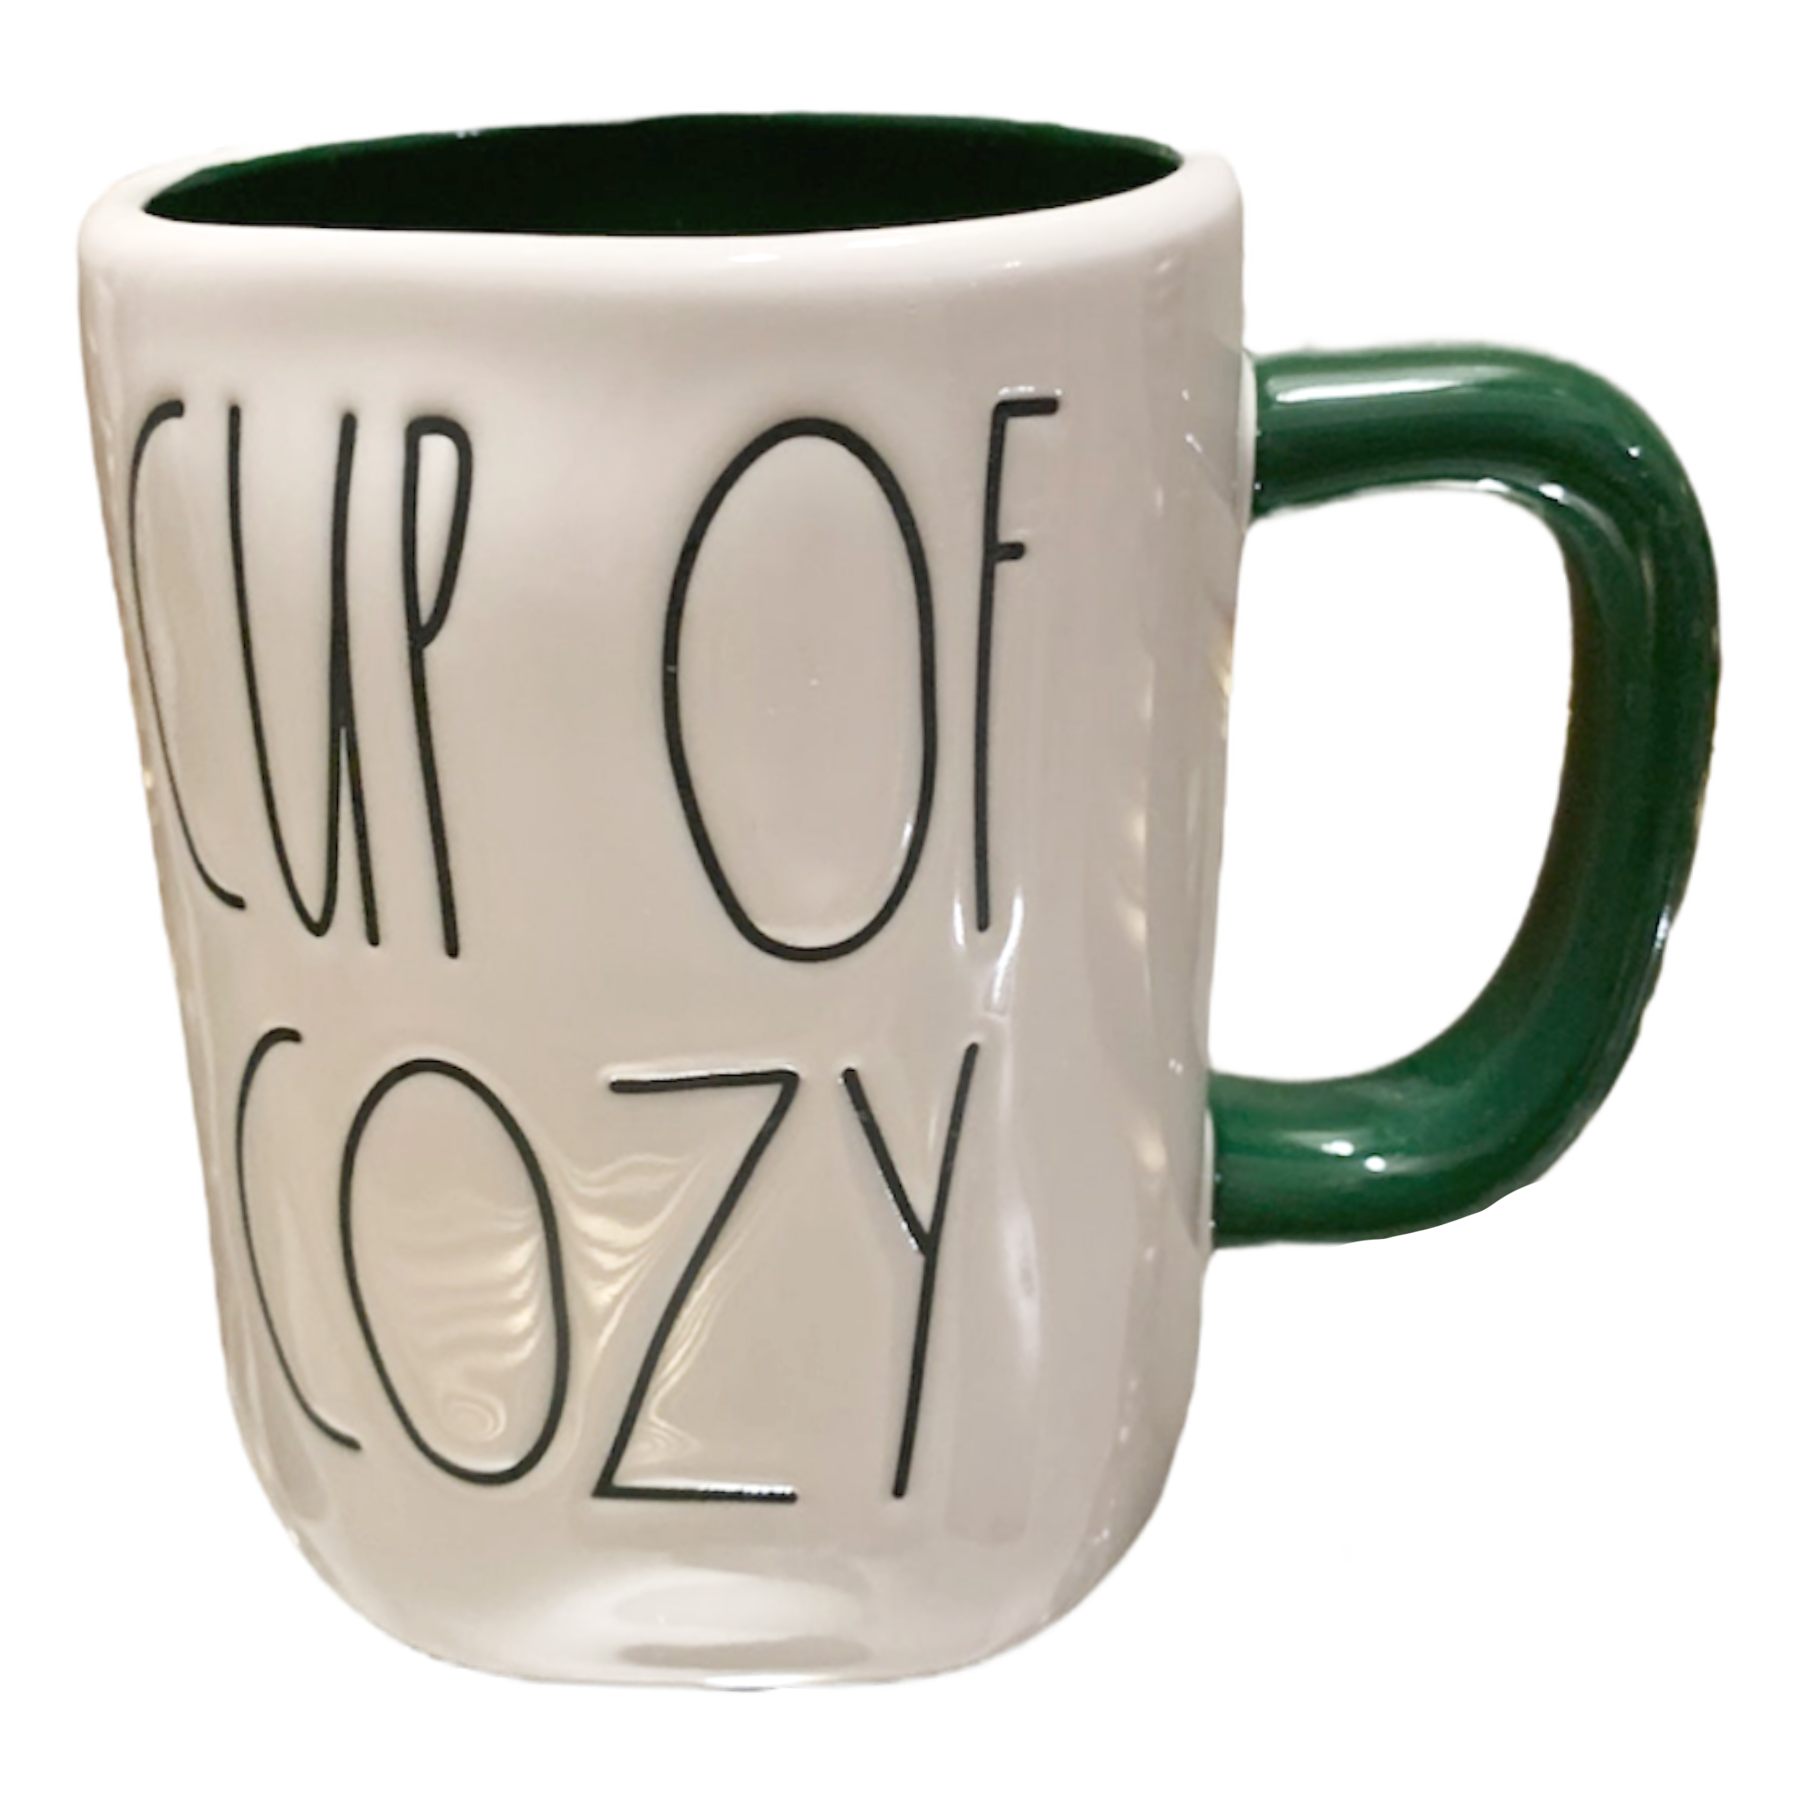 Queen Of Cozy Mug